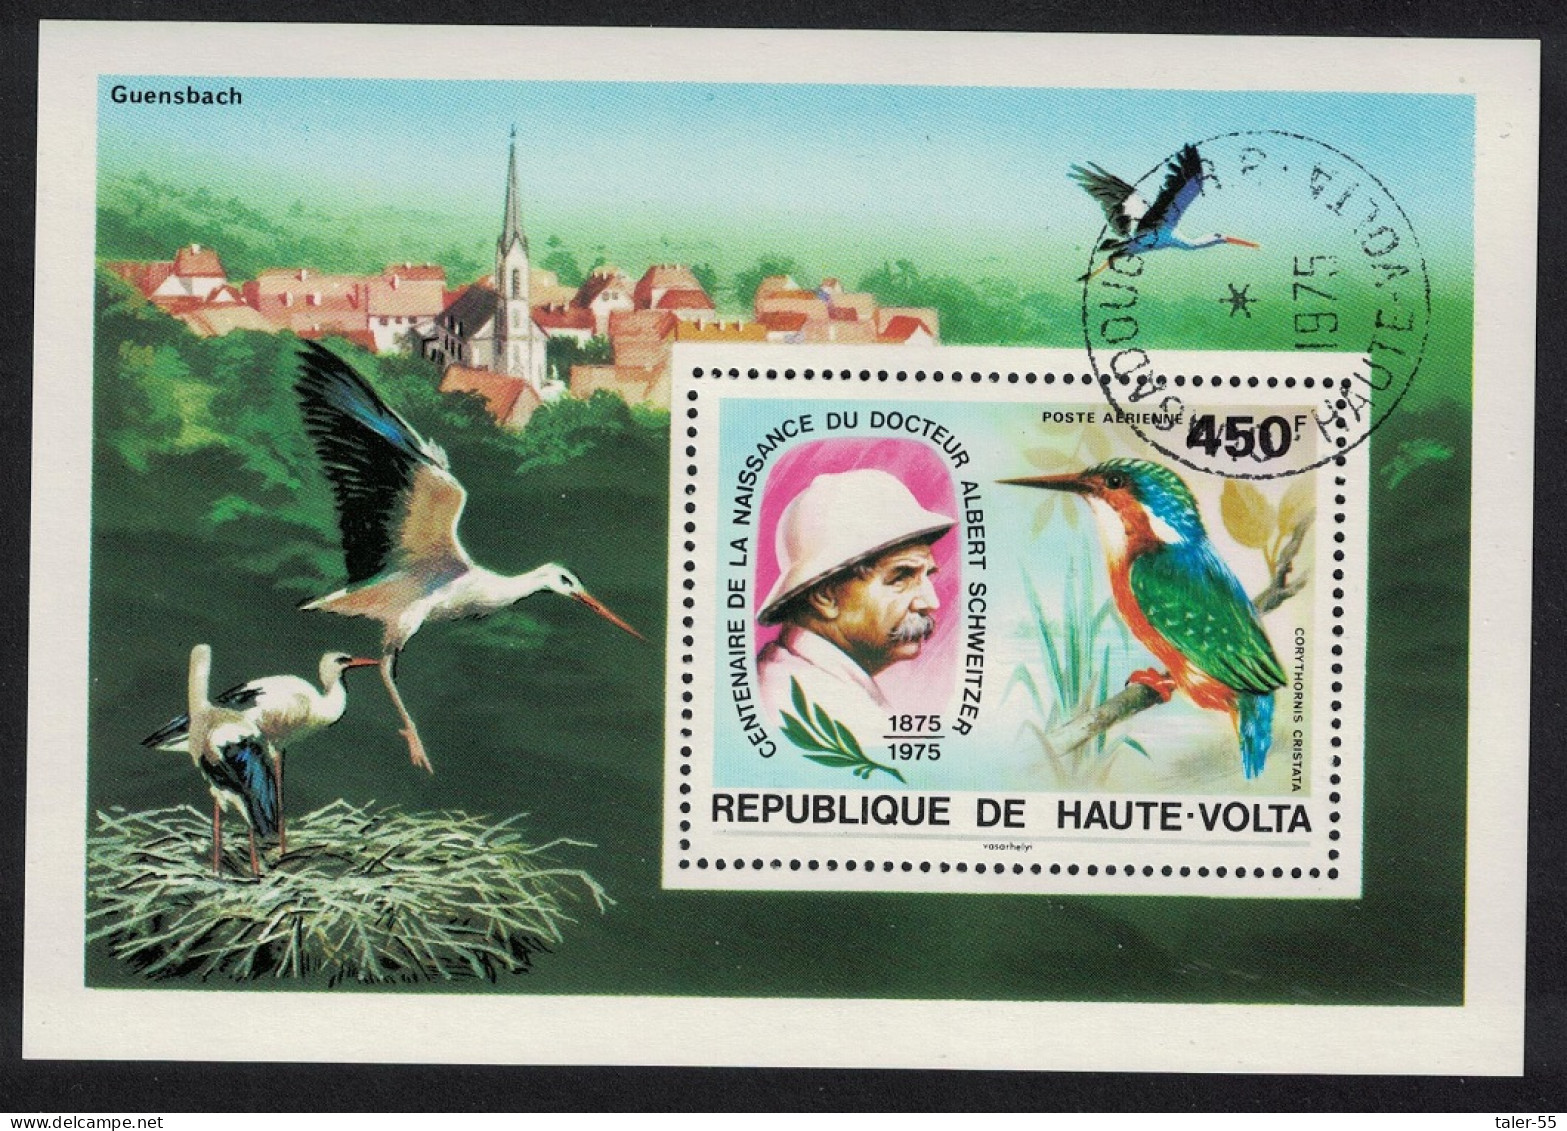 Upper Volta Stork Kingfisher Birds Dr Albert Schweitzer MS 1975 CTO MI#Block 35 Sc#C214 - Haute-Volta (1958-1984)